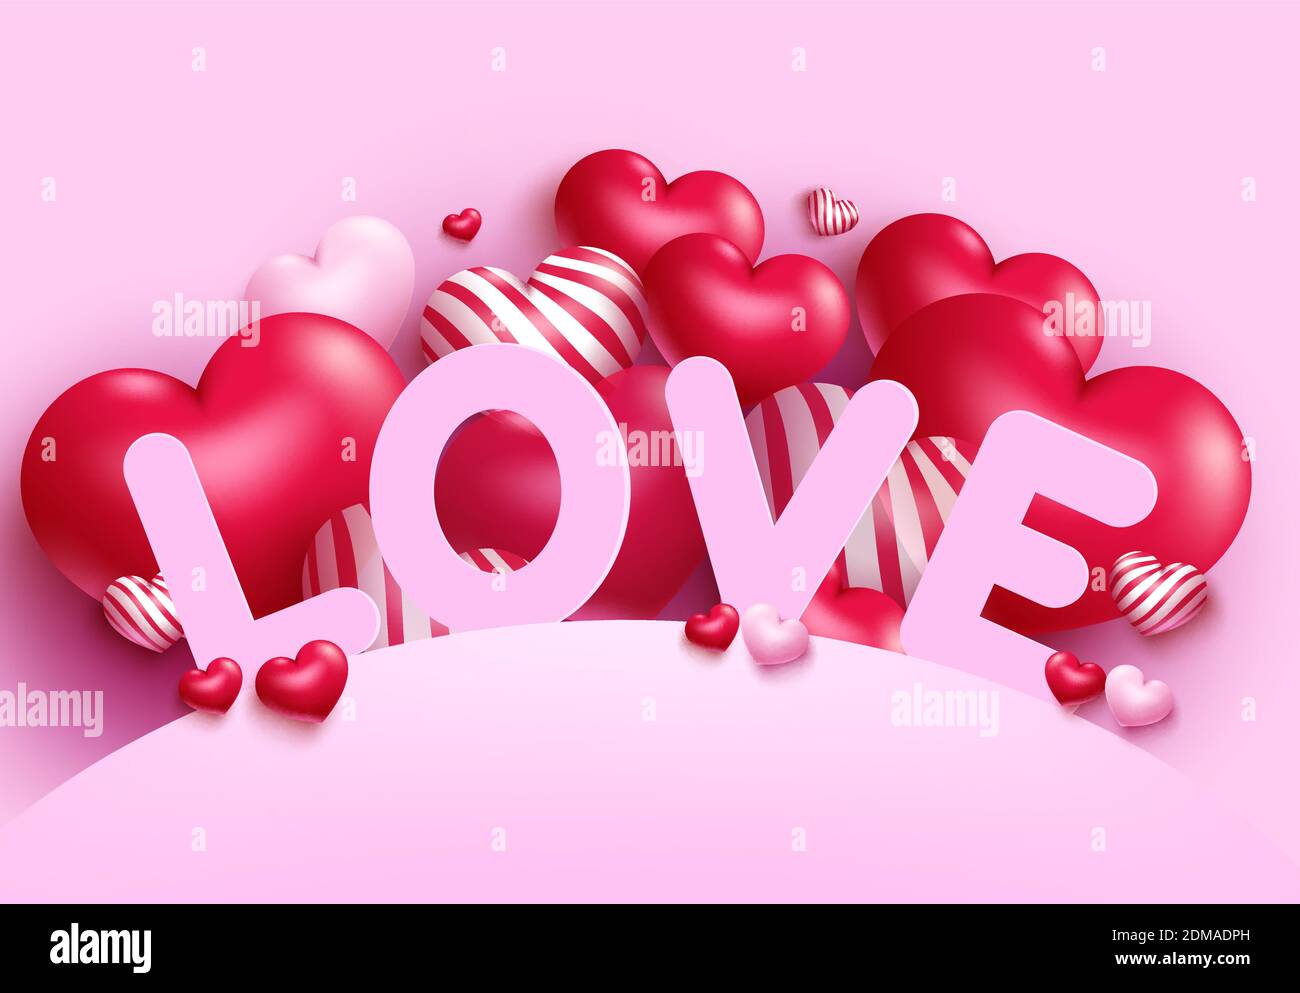 Design d'arrière-plan Love Vector. Saint-Valentin amour papier coupé texte avec coeur ballon pour romantique Saint-Valentin célébration de message d'accueil conception. Illustration de Vecteur